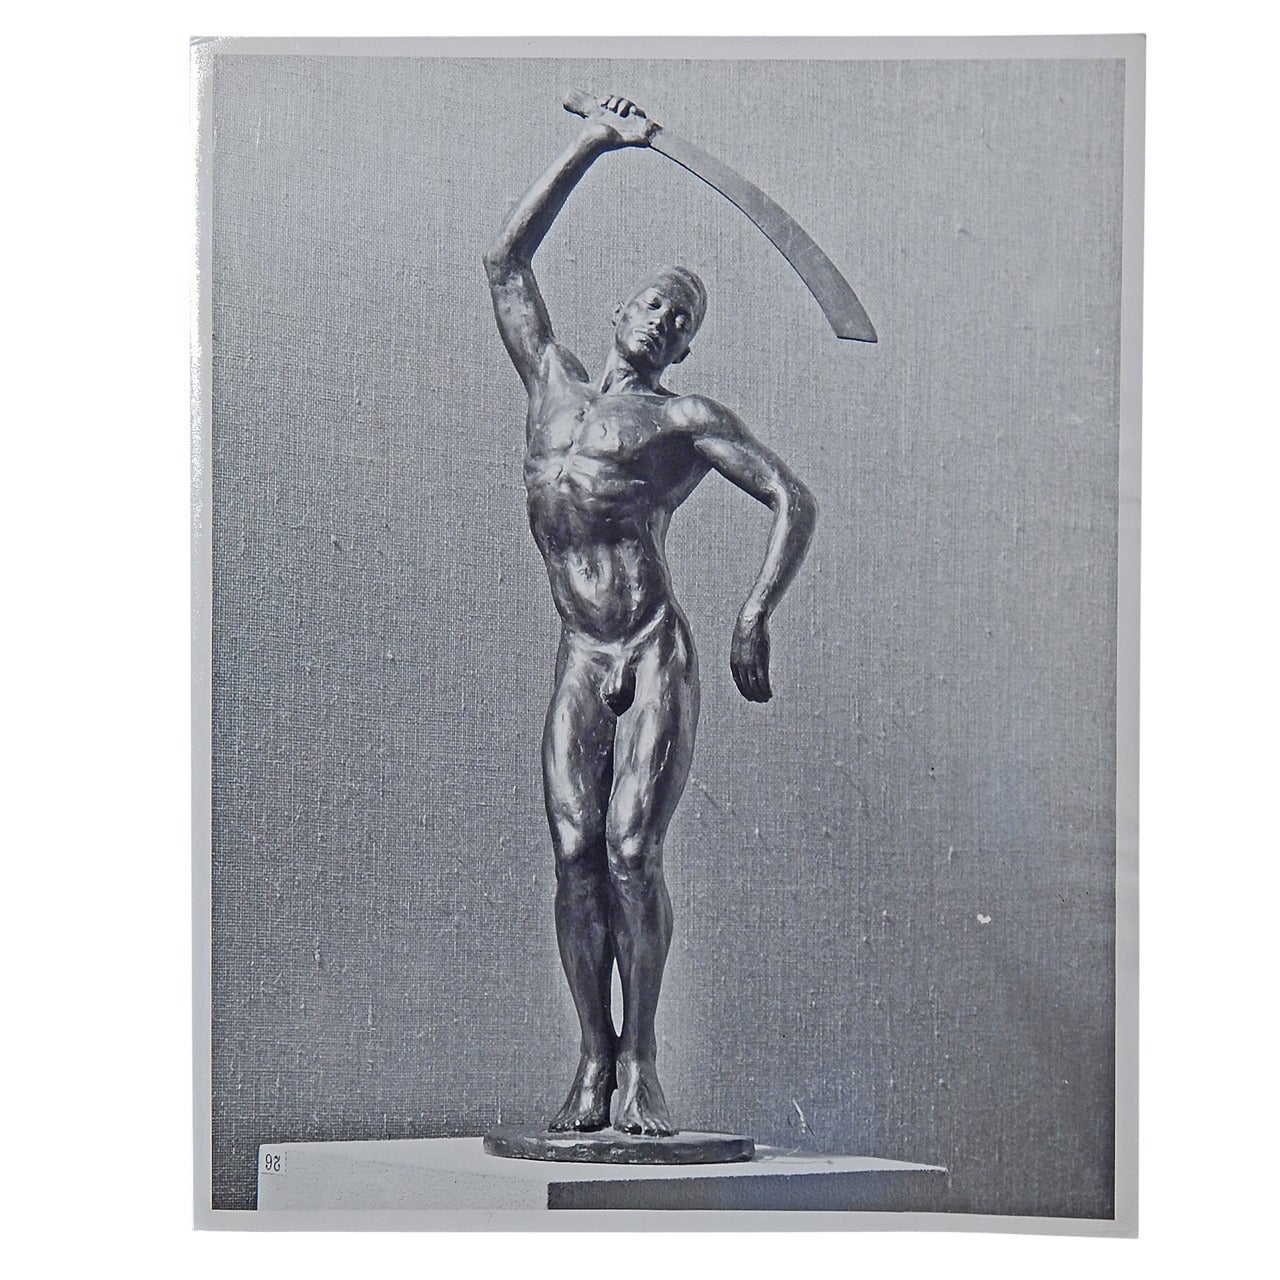 Benga, importante photographie de la sculpture de Barthe de M. Smith